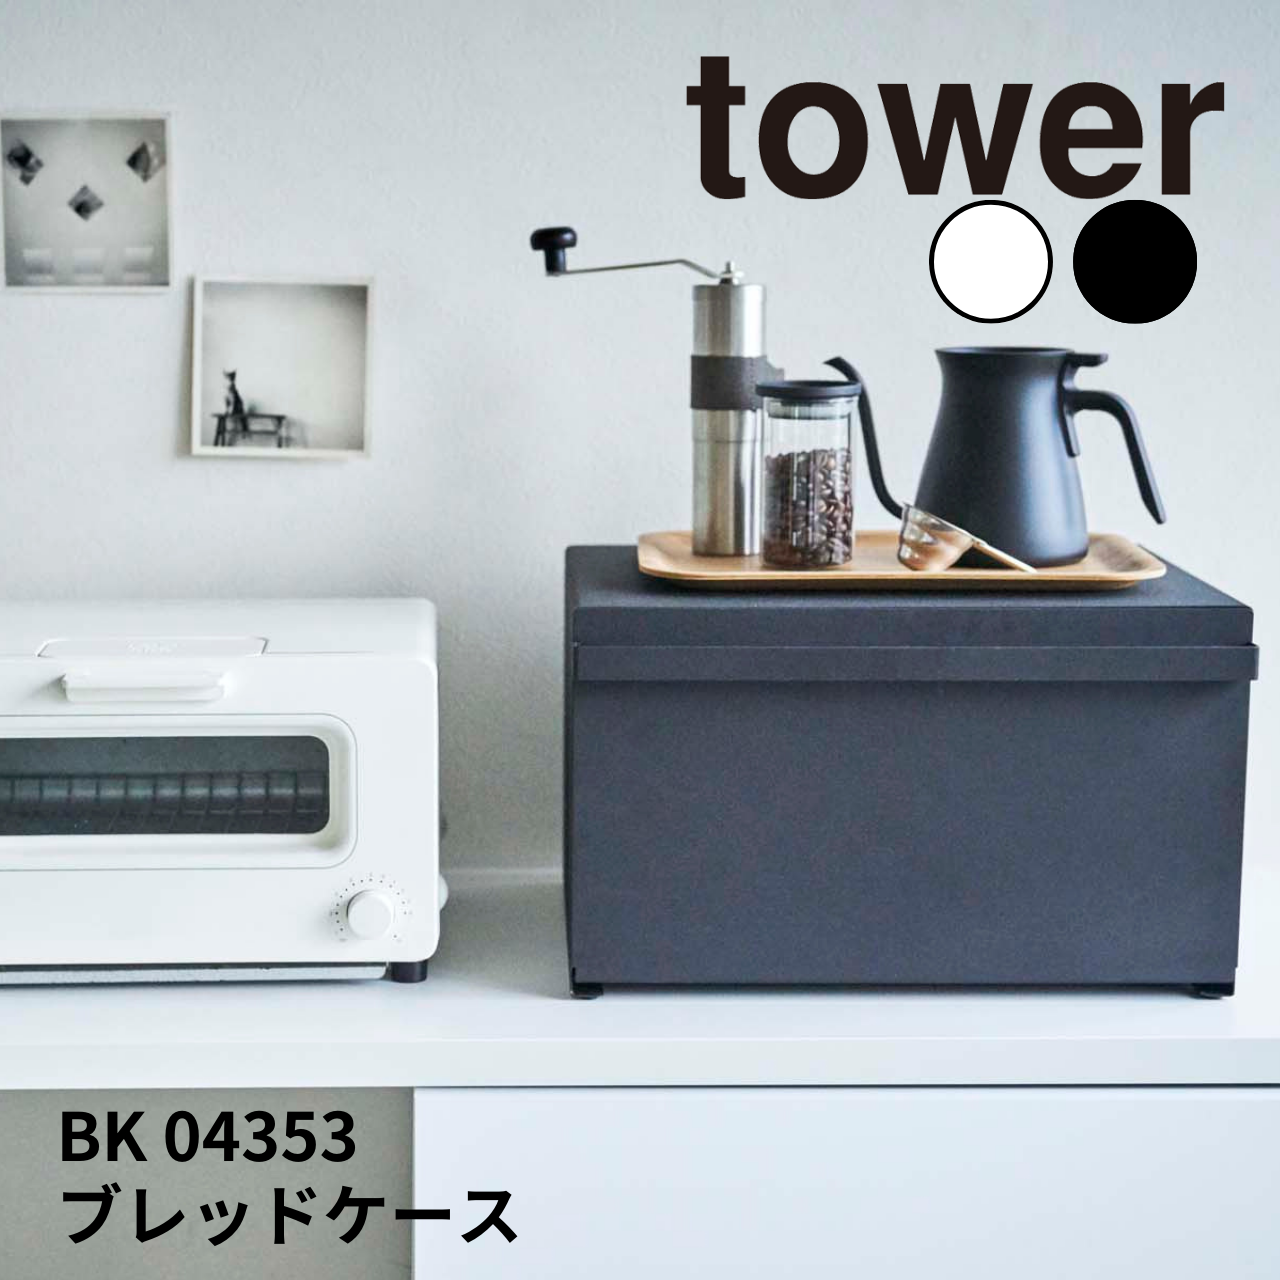 tower / タワー ブレッドケース 山崎実業 / yamazaki BK 04353